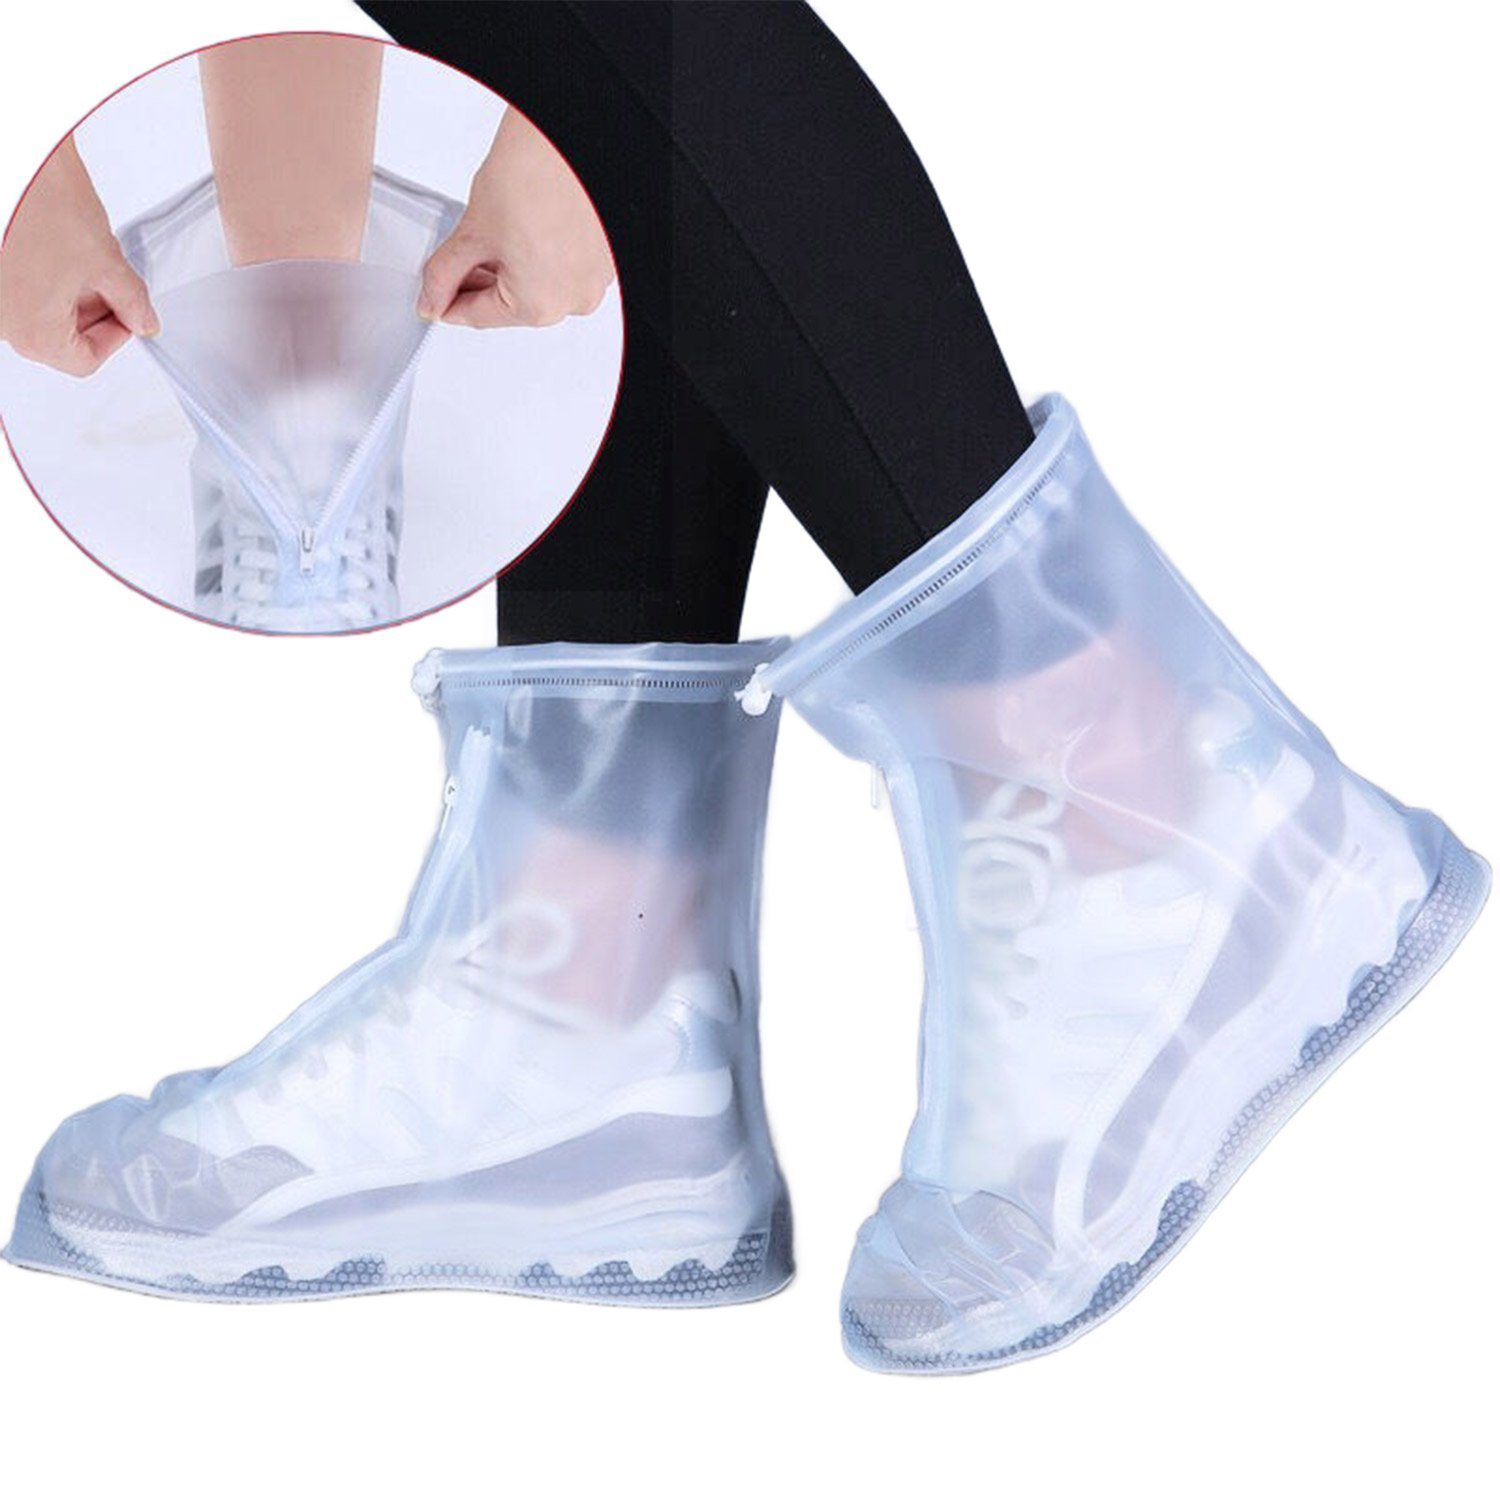 Schuhe Schuhüberzieher Weiß Regenschutz Überzieher Wasserdicht Daisred